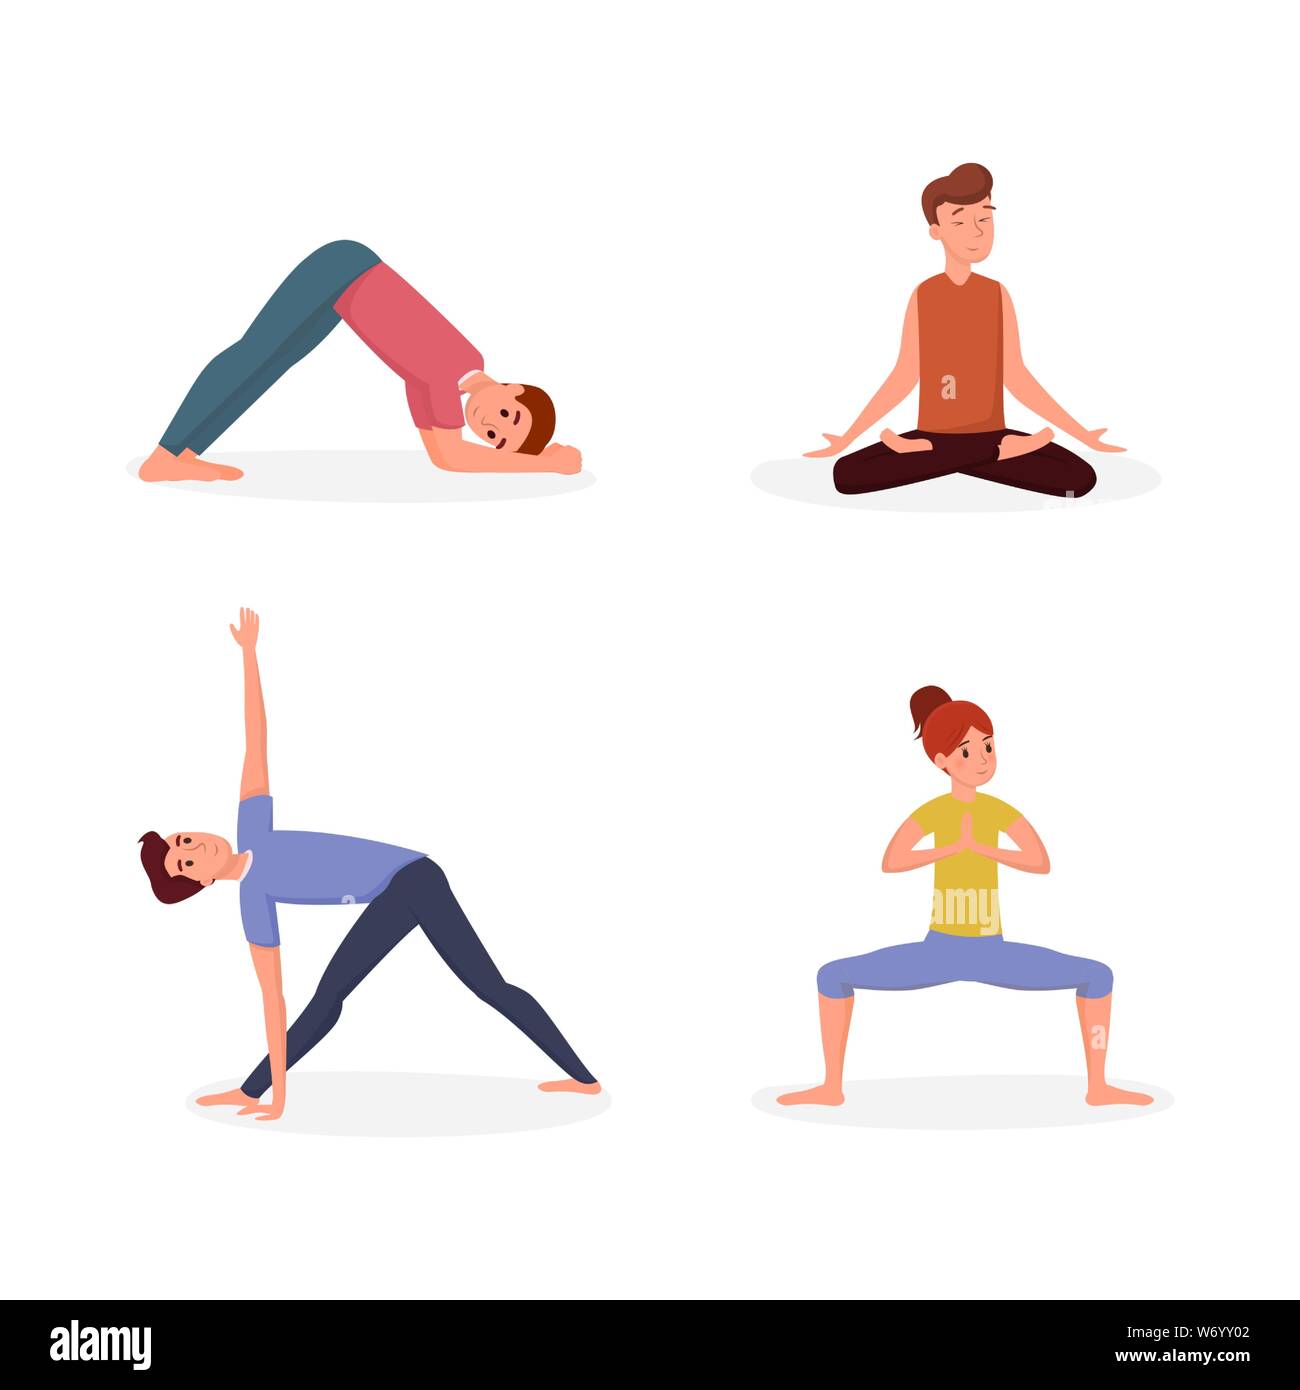 Conjunto aislado de yoga ilustración del vector. Ilustración de